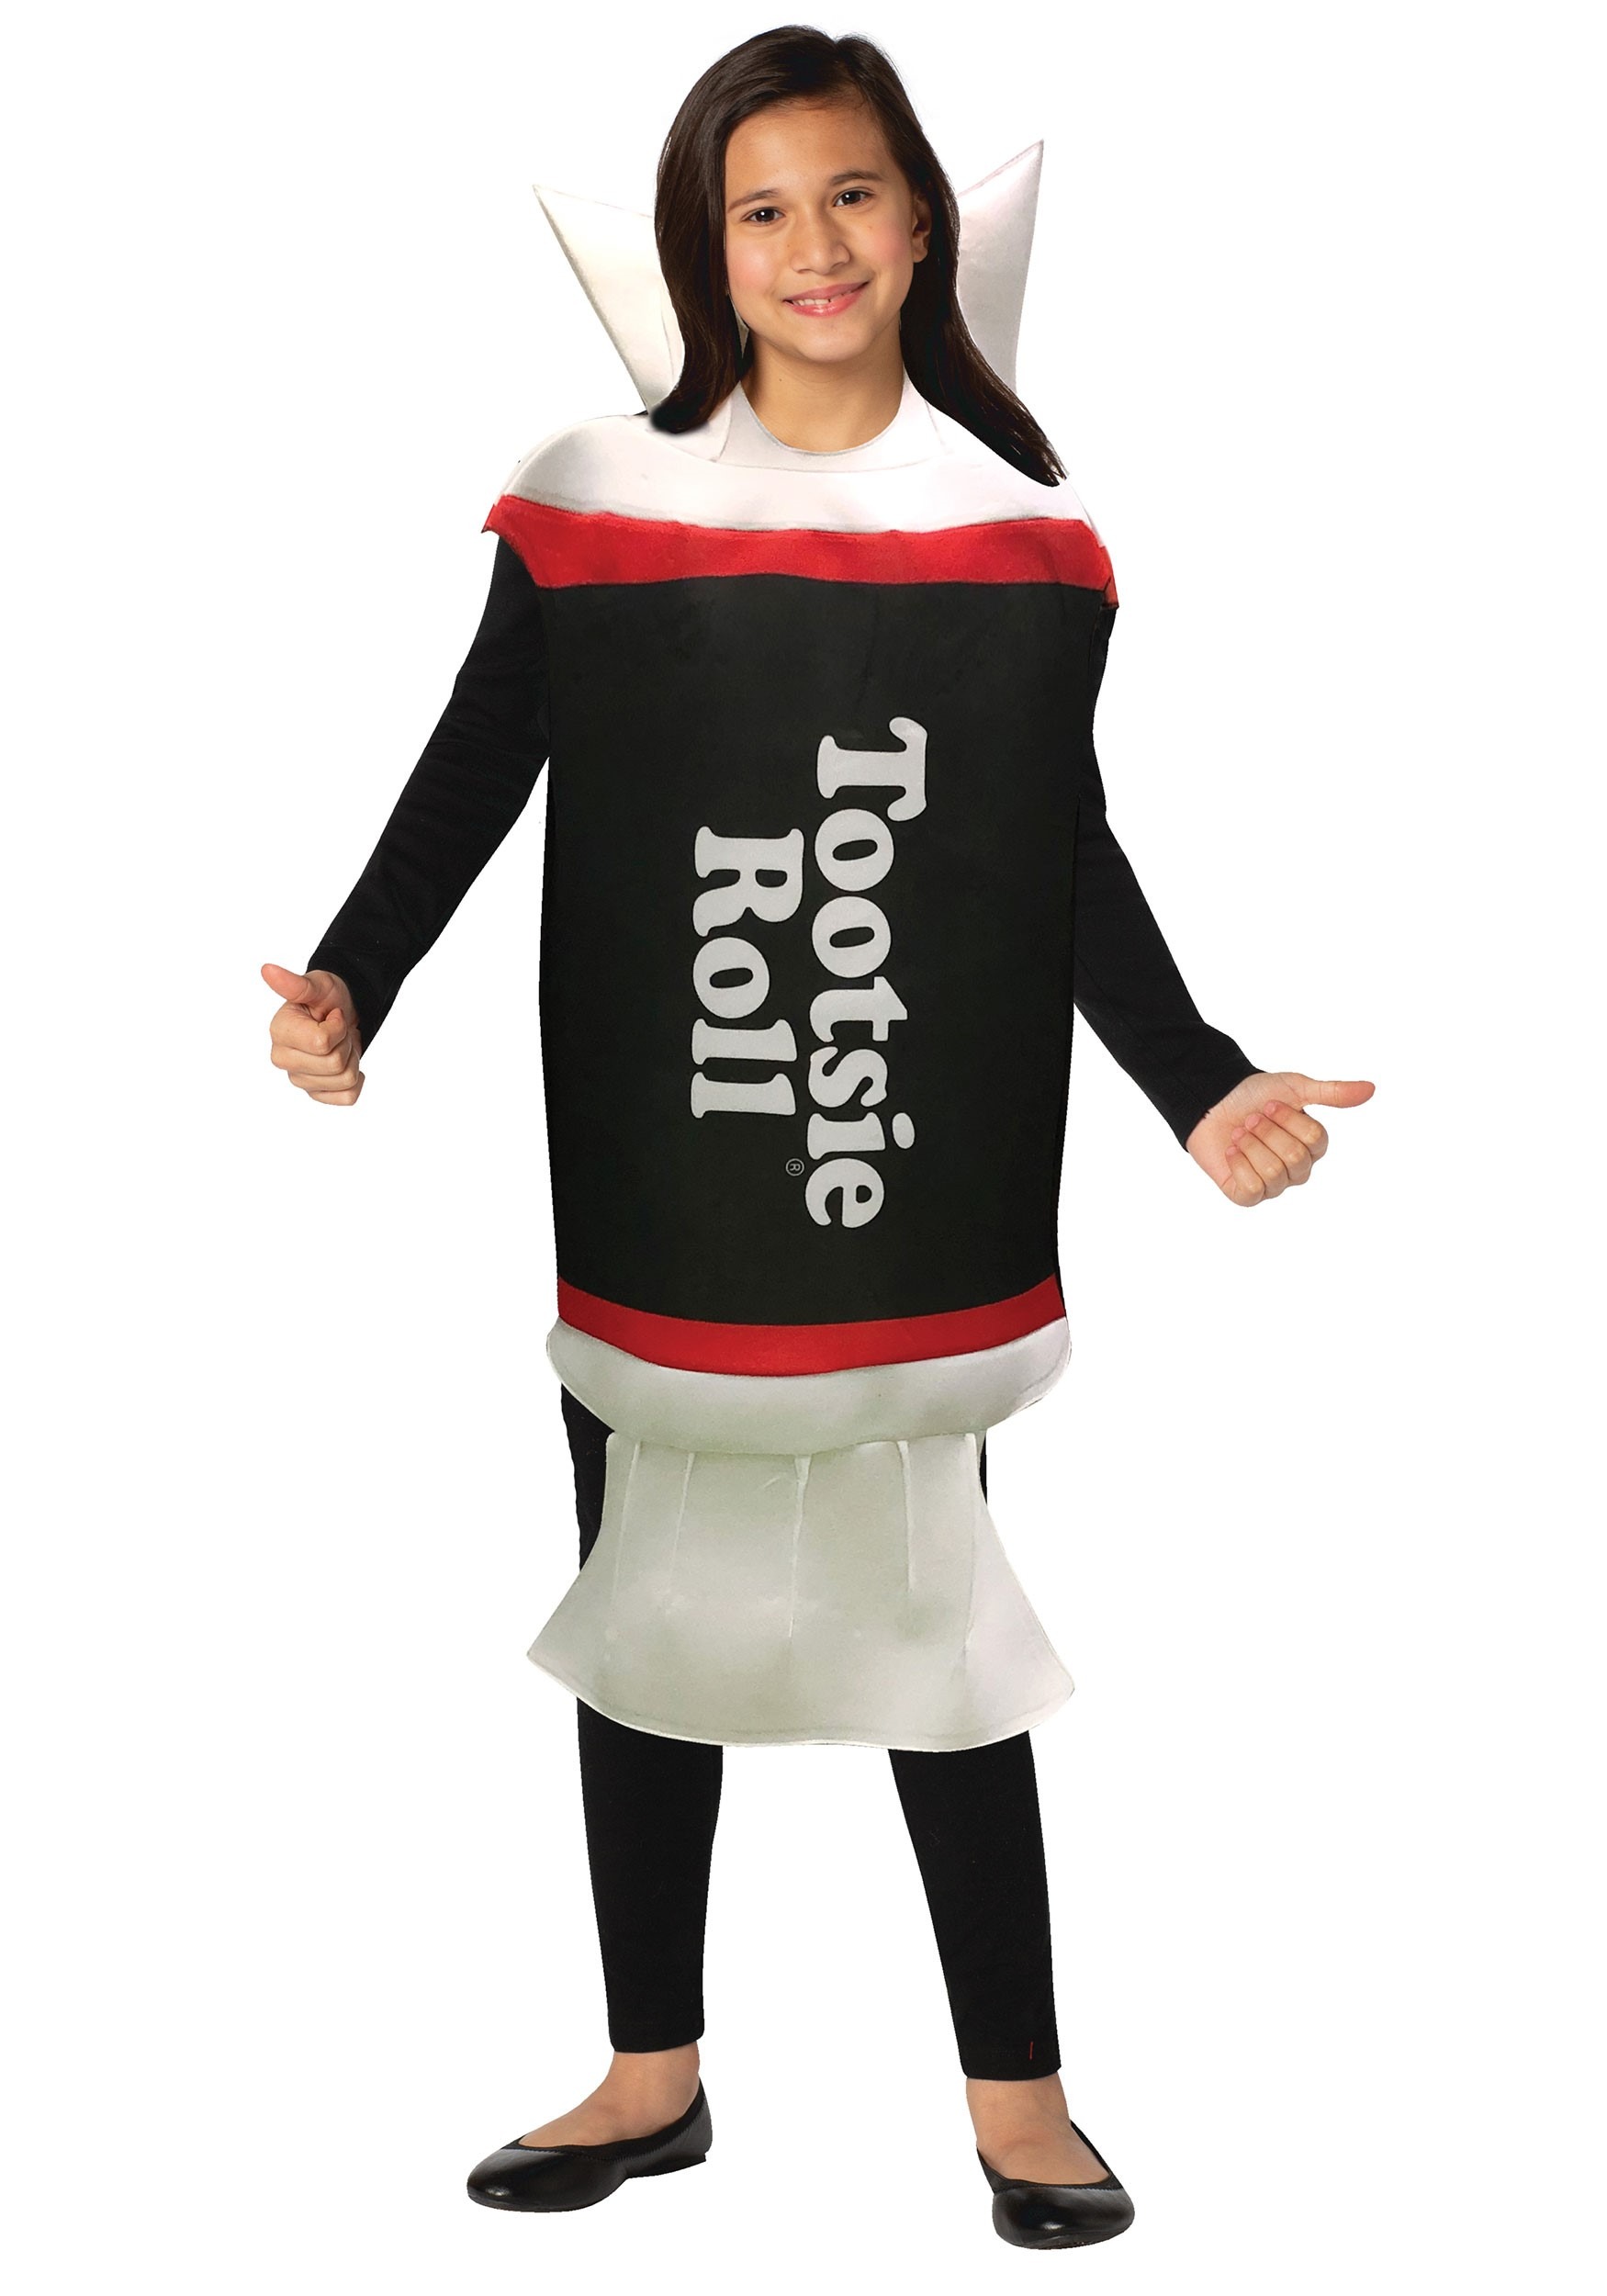 Kid’s Tootsie Roll Costume